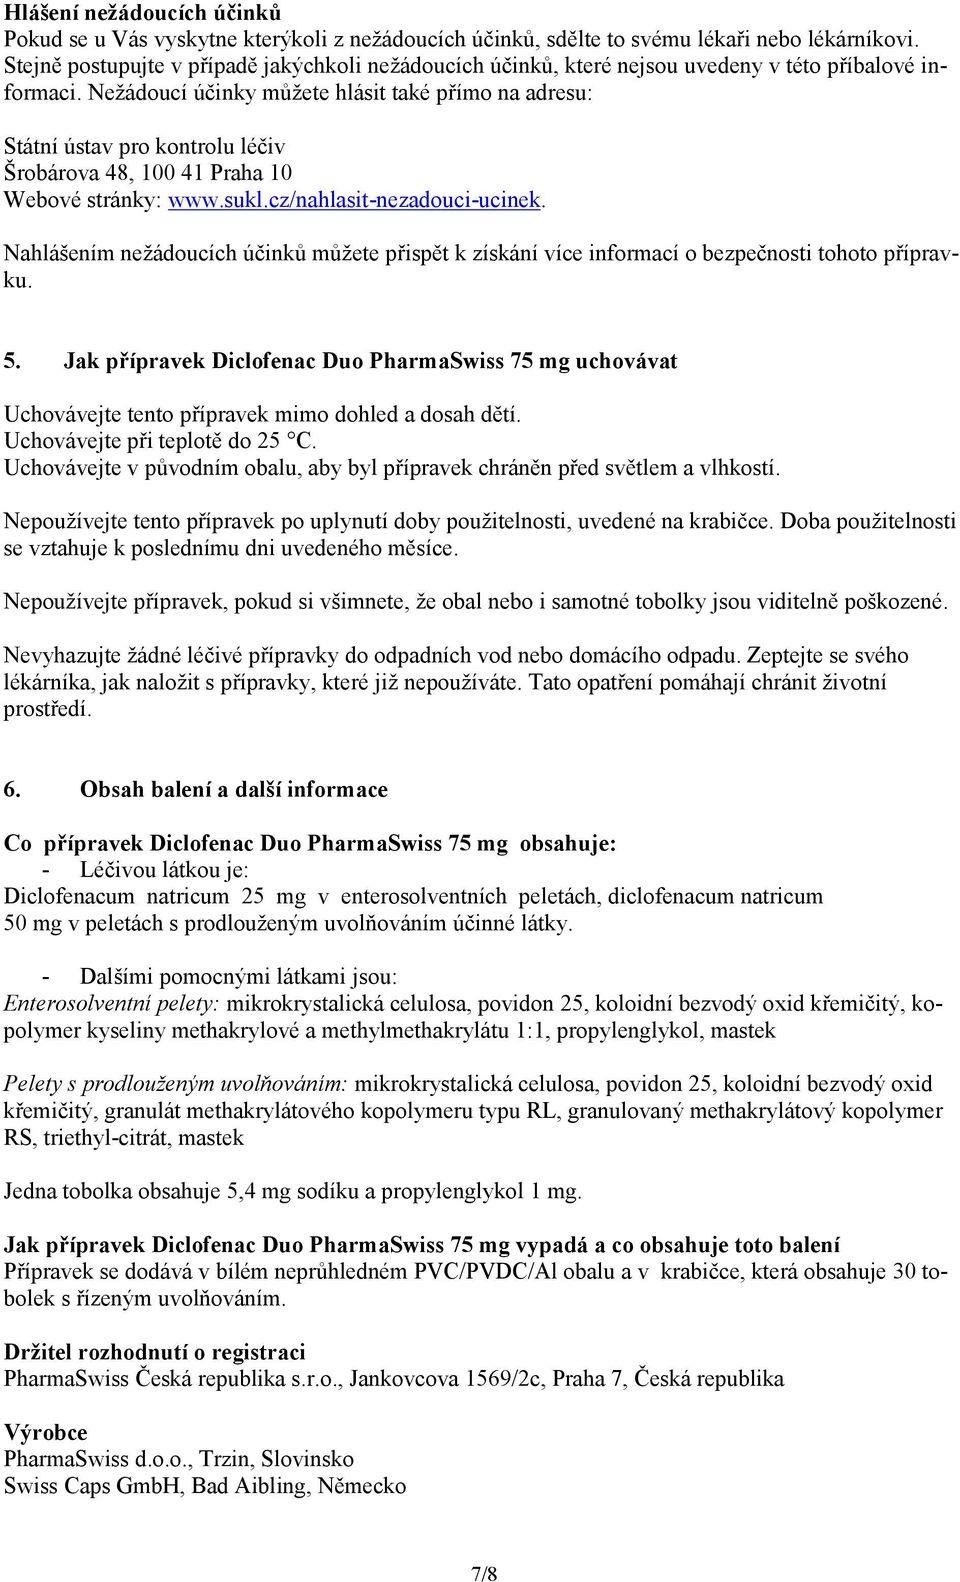 Nežádoucí účinky můžete hlásit také přímo na adresu: Státní ústav pro kontrolu léčiv Šrobárova 48, 100 41 Praha 10 Webové stránky: www.sukl.cz/nahlasit-nezadouci-ucinek.